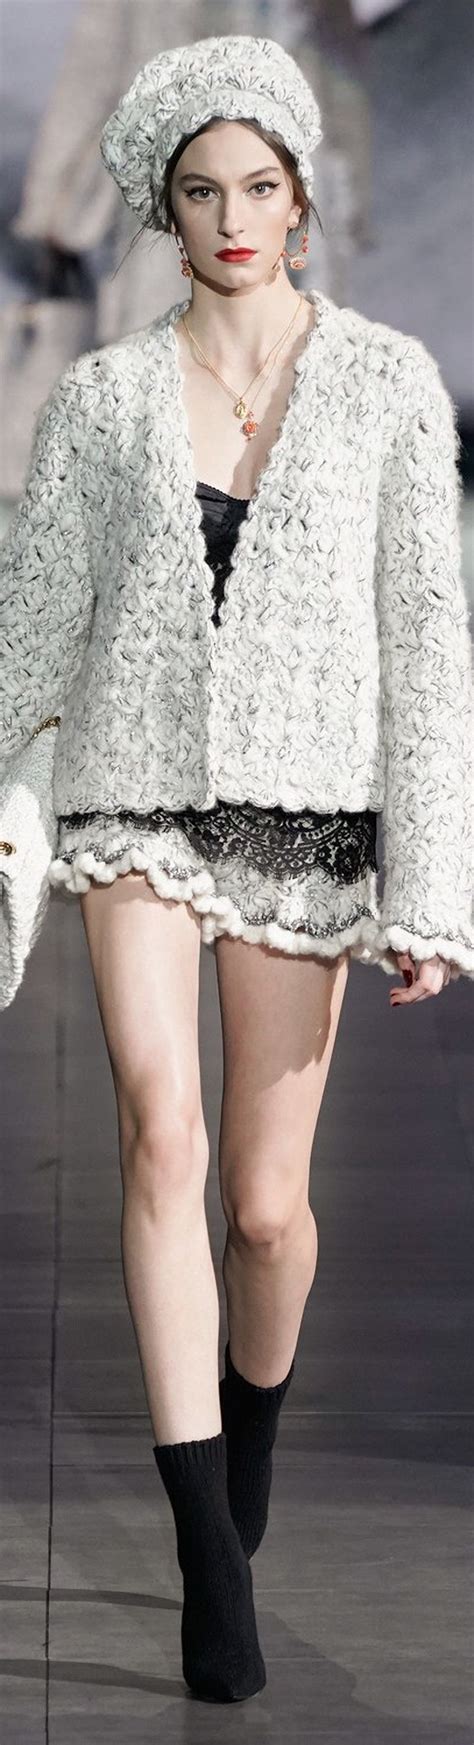 Dolce & Gabbana Fall RTW 2020 | knitting fashion runway ...